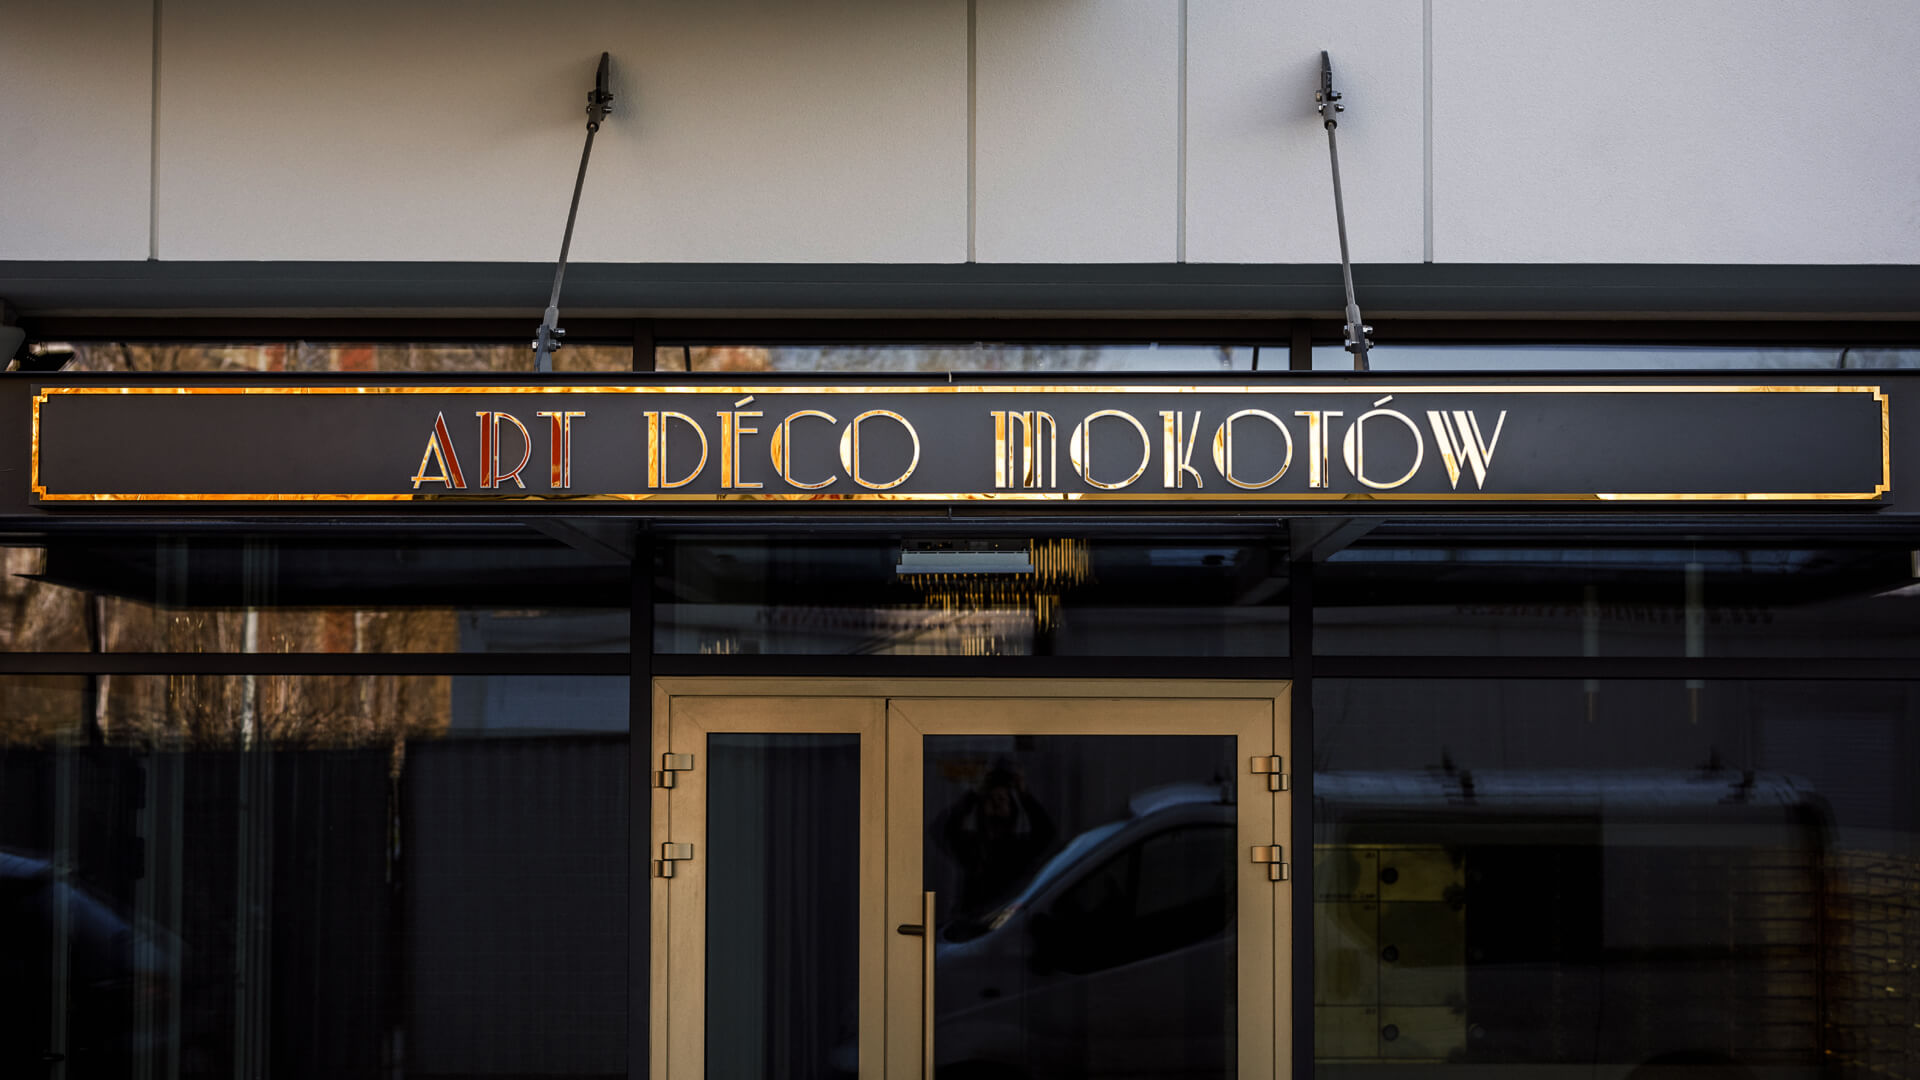 Art Deco Mokotów - Cofanetto in dibond color oro sopra l'ingresso.